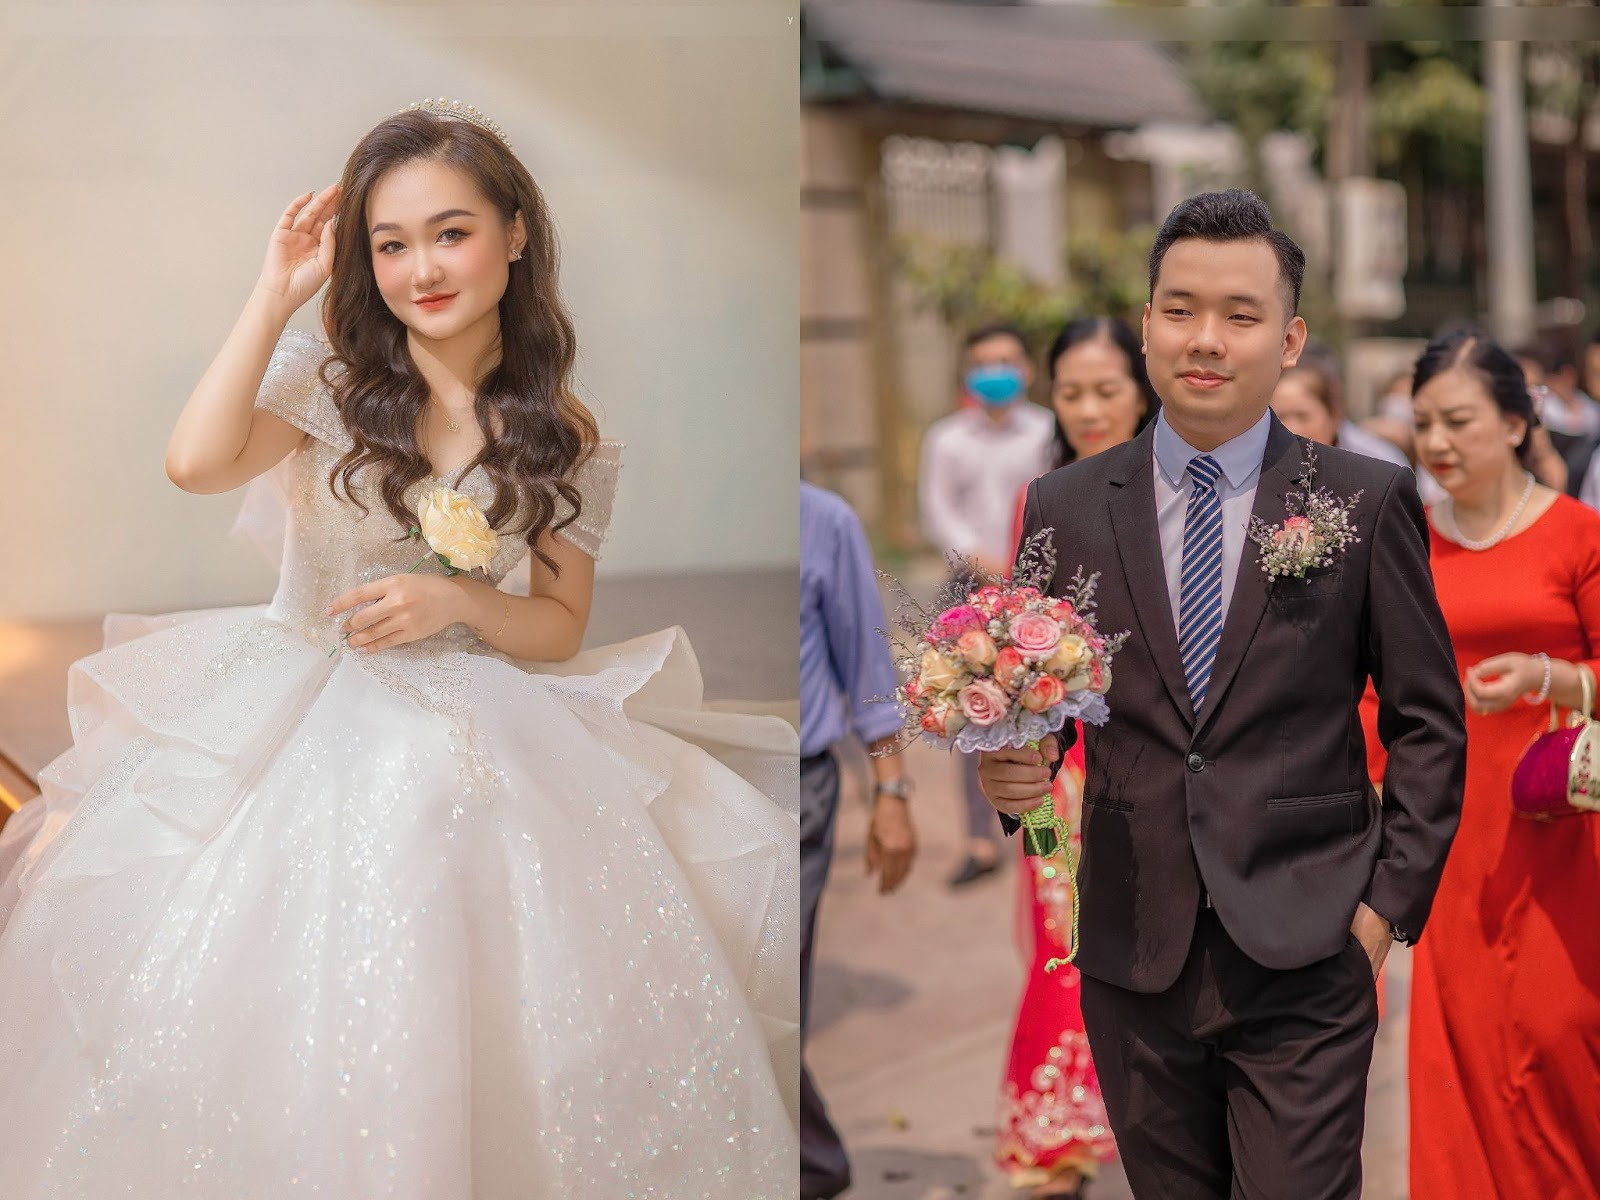 Chú rể bật khóc nức nở, nắm chặt tay bố vợ trong đám cưới ở Bắc Giang - 6